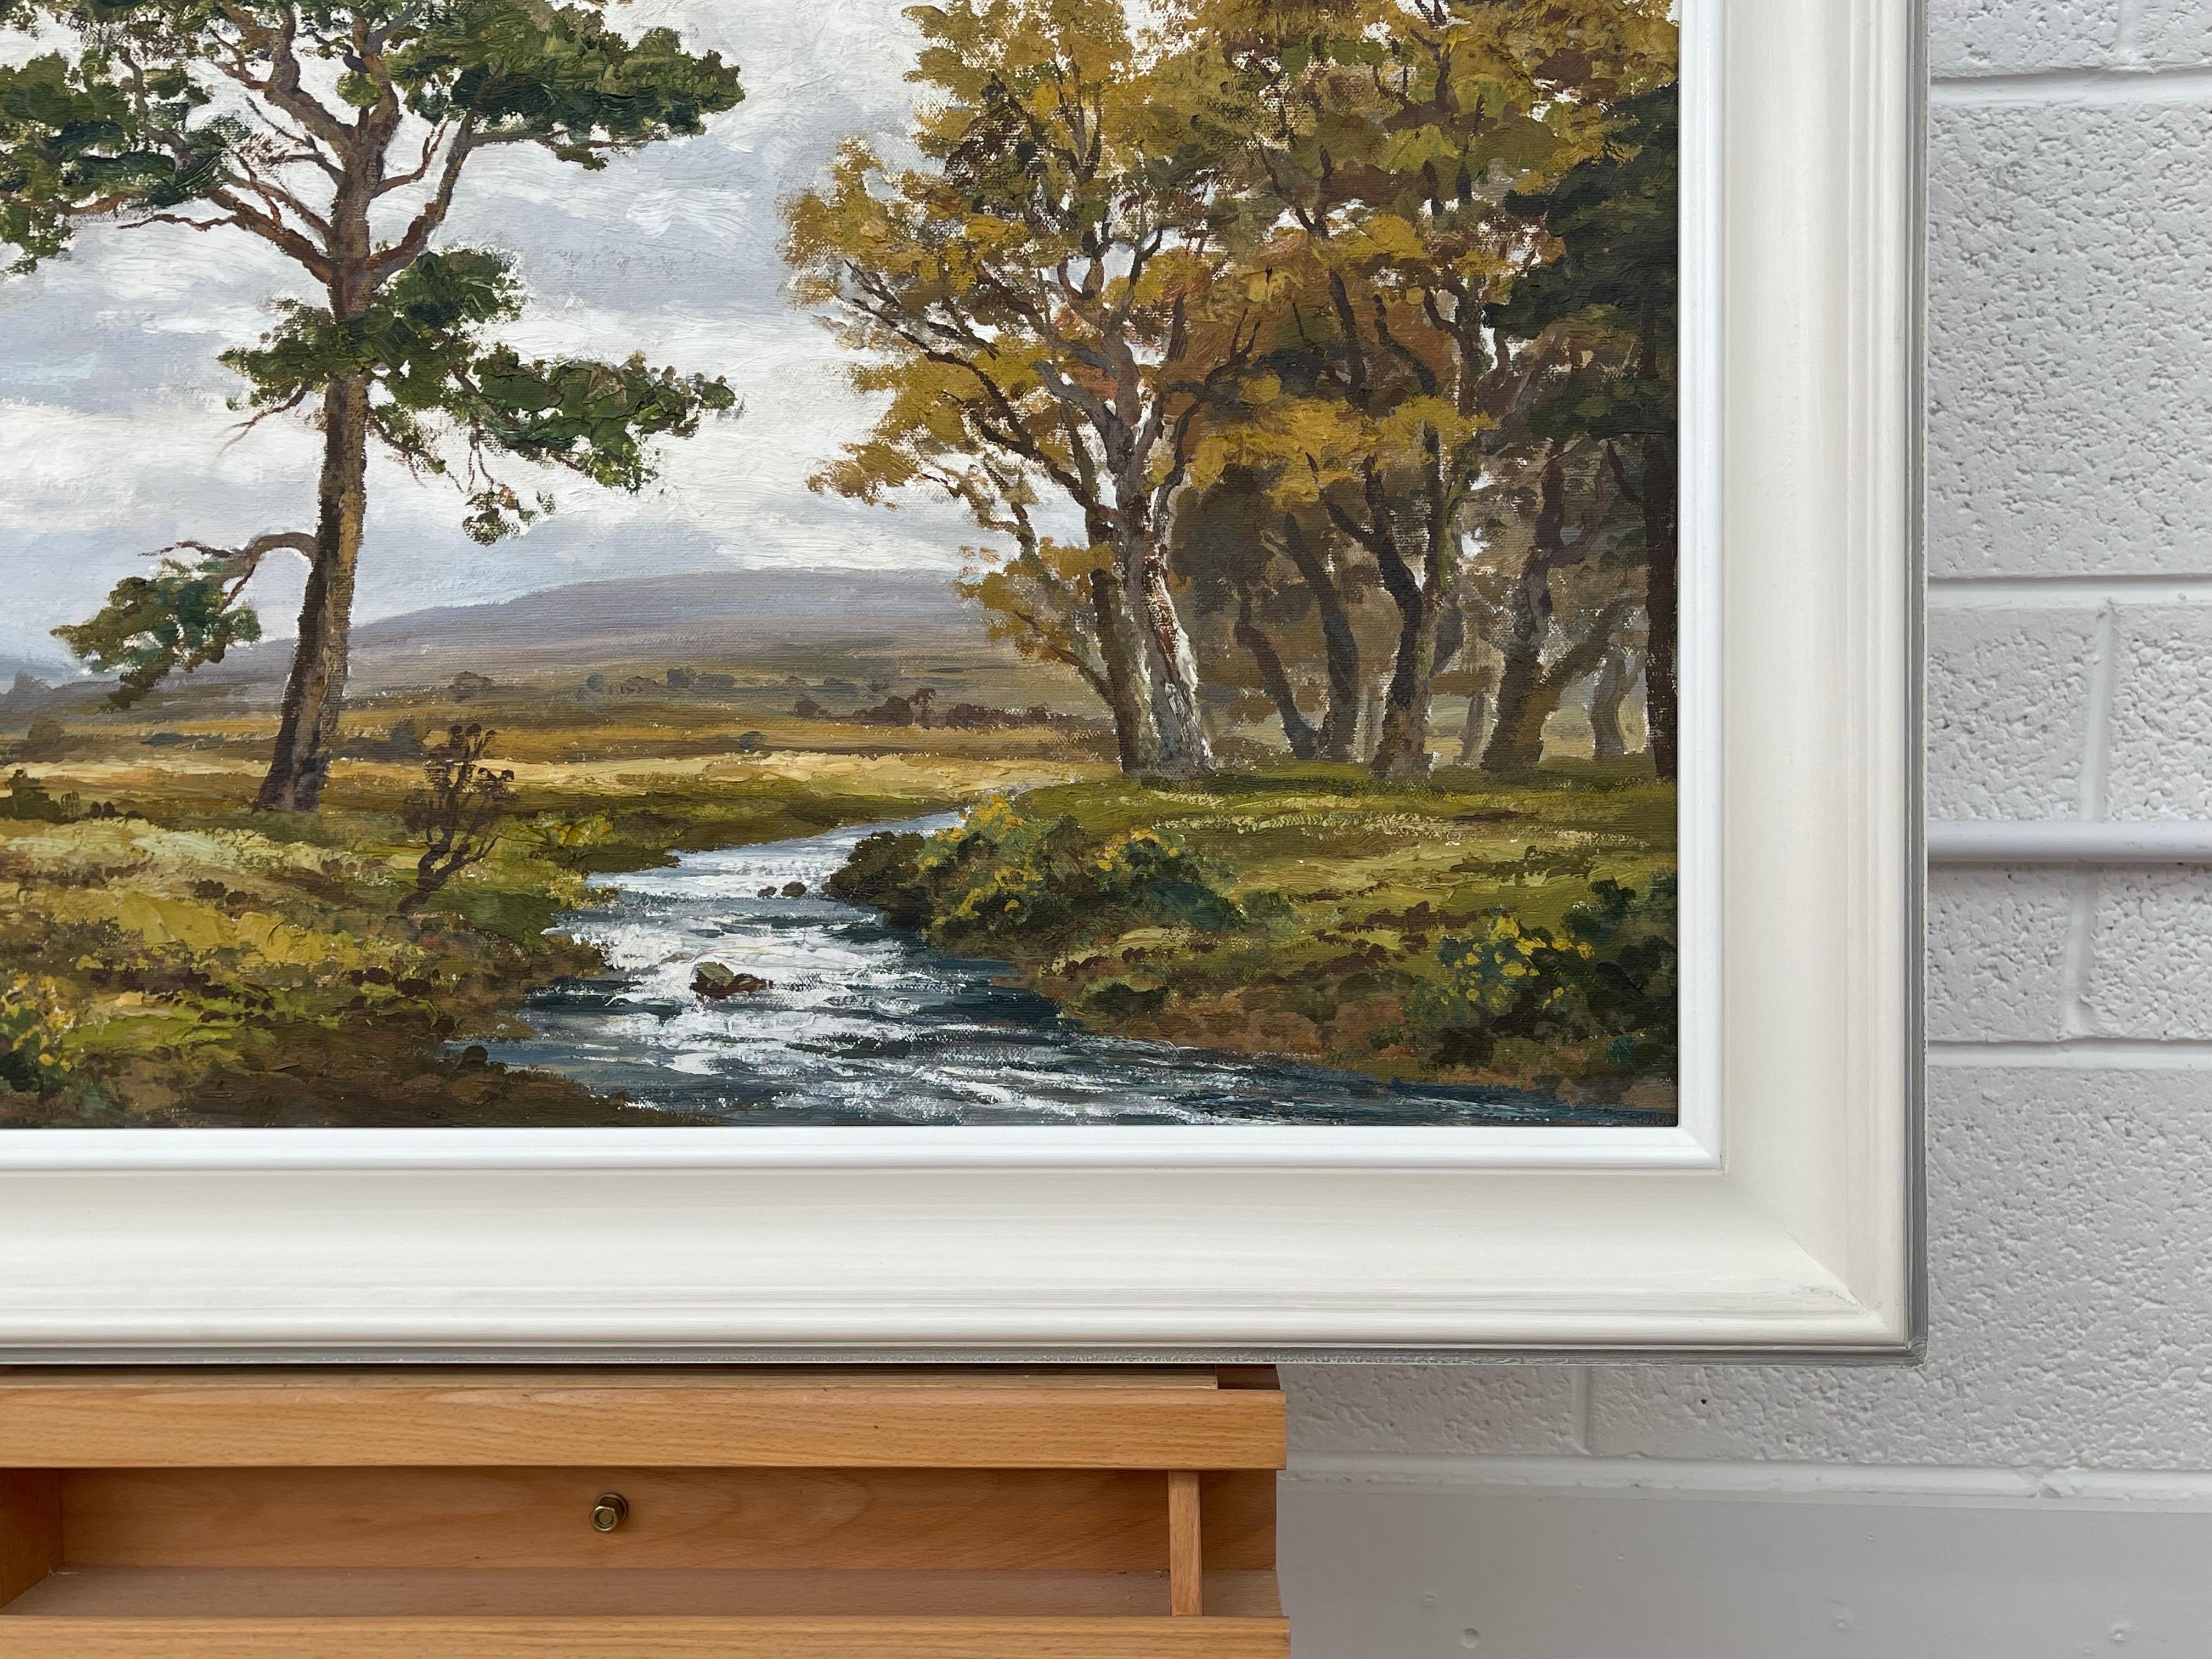 Peinture à l'huile originale du paysage fluvial de Glenfinnan dans les Highlands écossais par l'artiste du 20e siècle, Robert Egginton. 

L'œuvre d'art mesure 30 x 22 pouces 
Le cadre mesure 36 x 28 pouces 

Présenté dans une moulure Frinton blanc